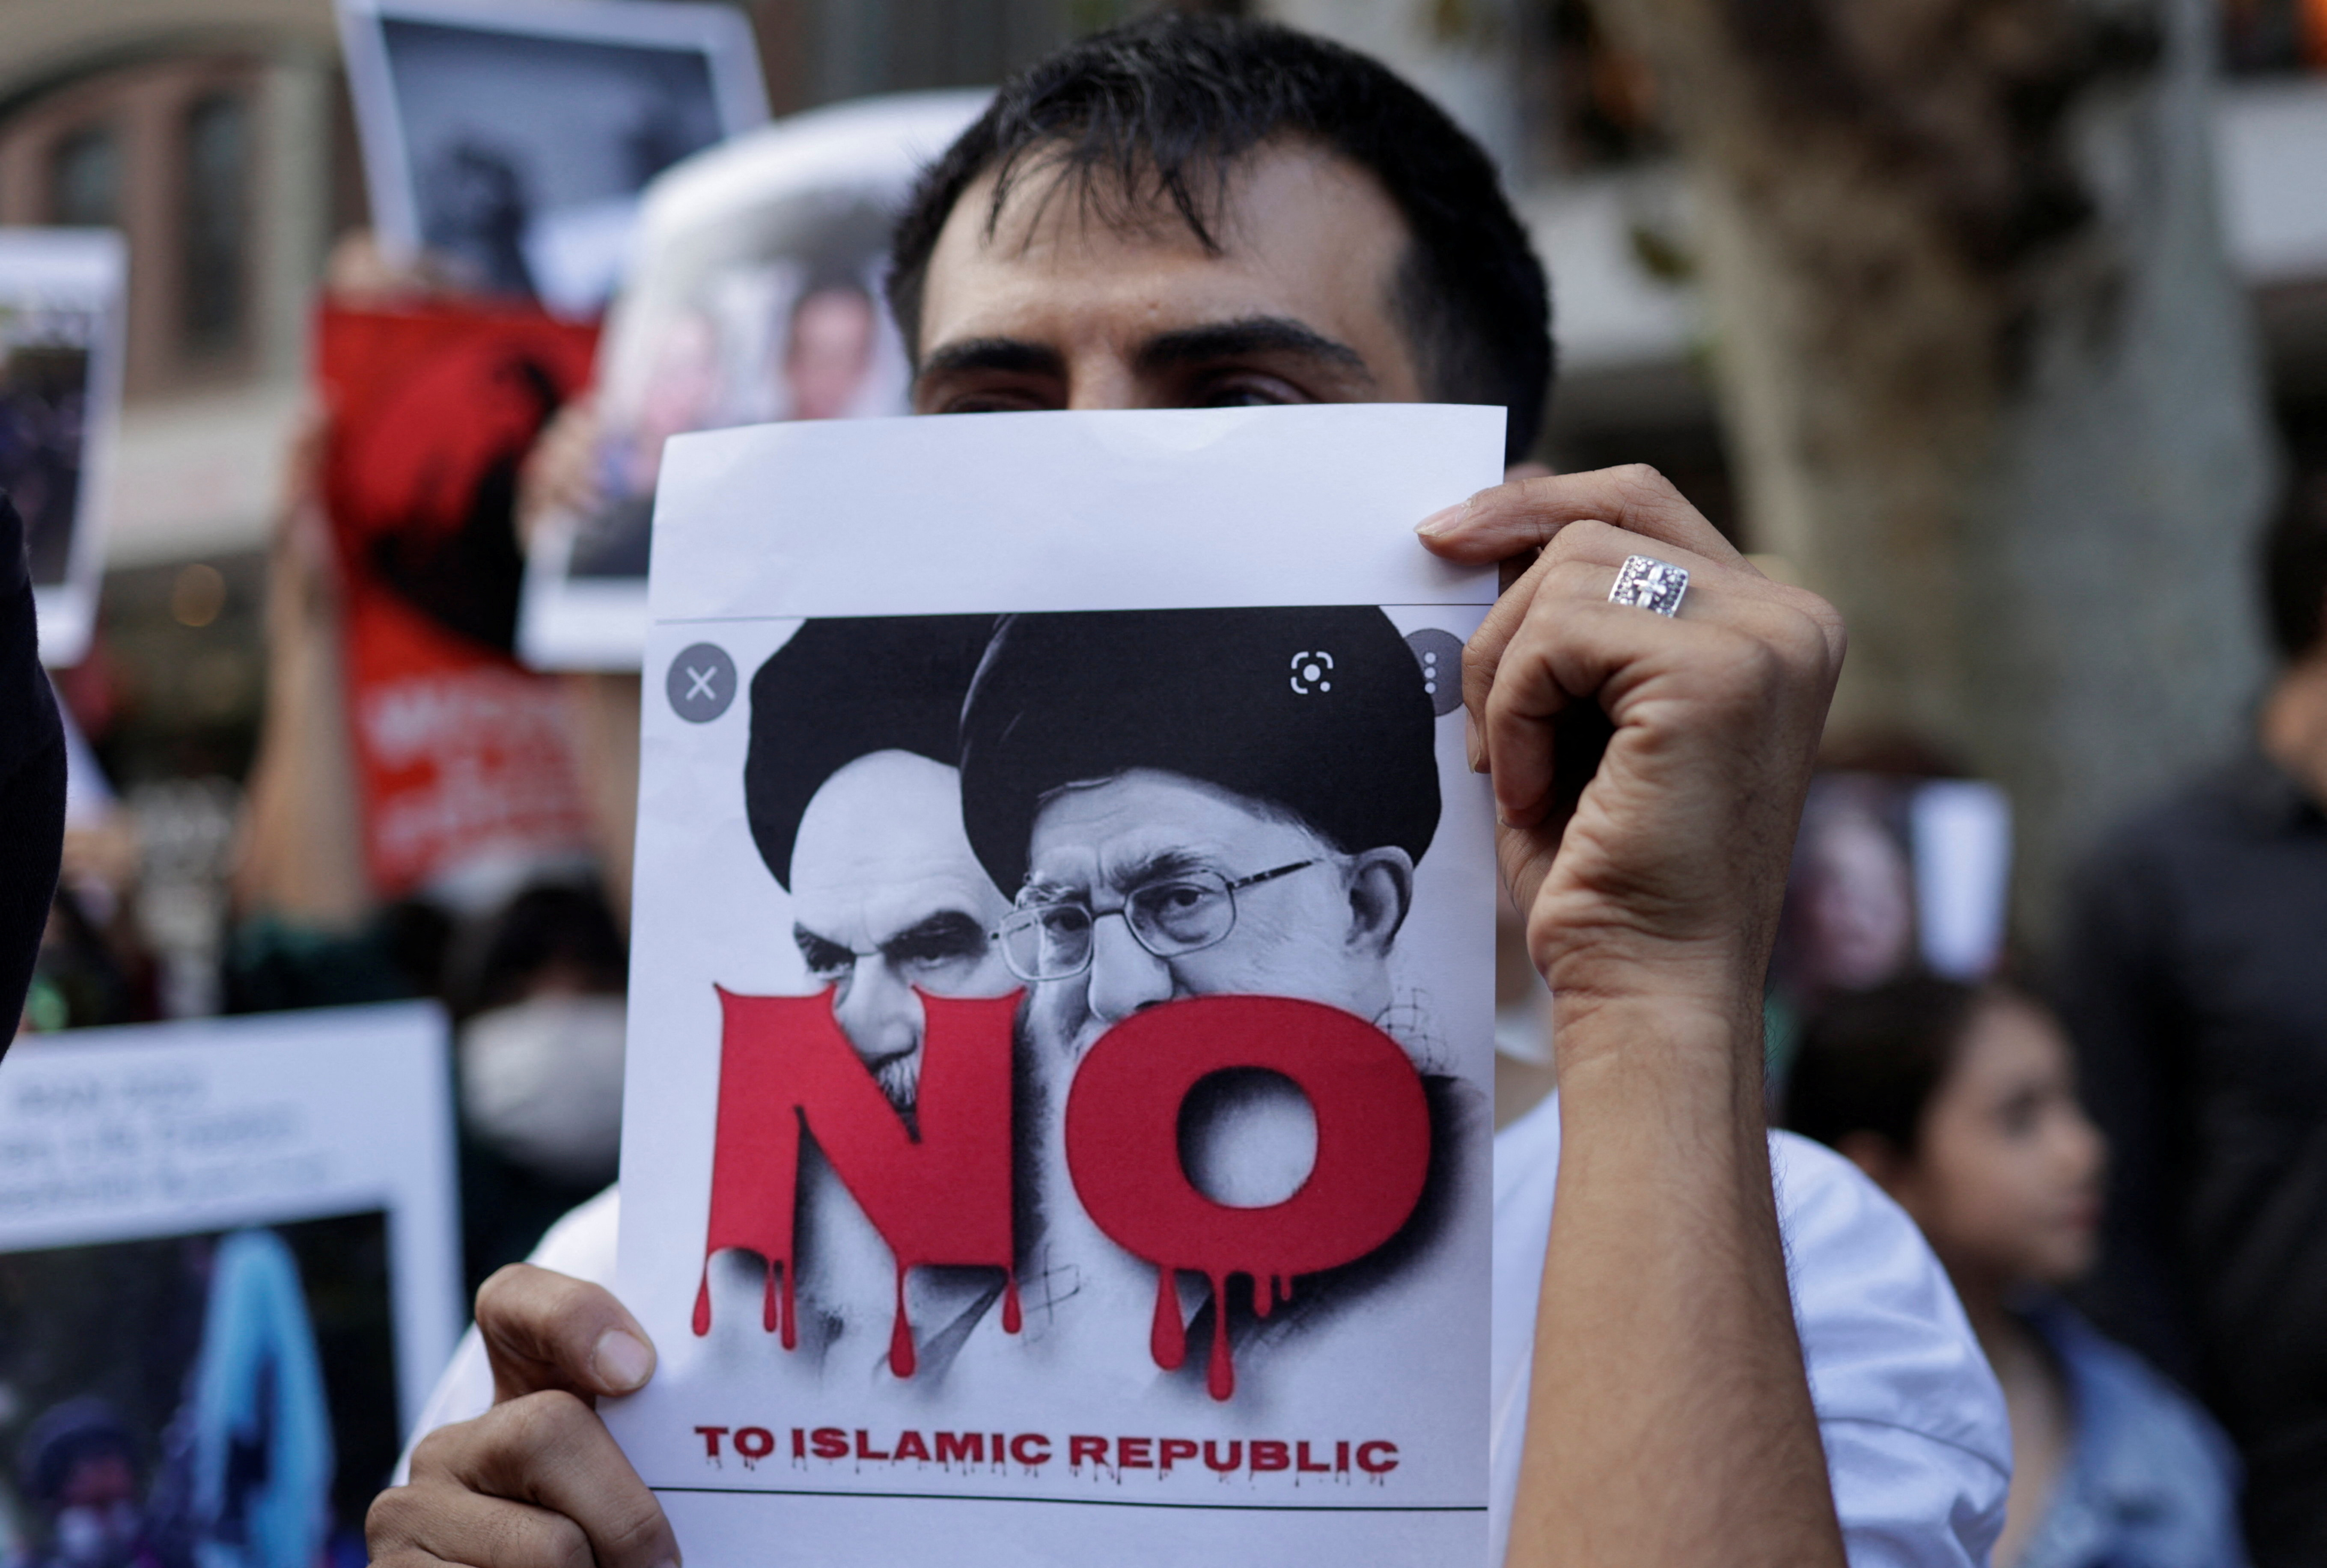 Los jóvenes "están demandando el fin de la República Islámica” (REUTERS)